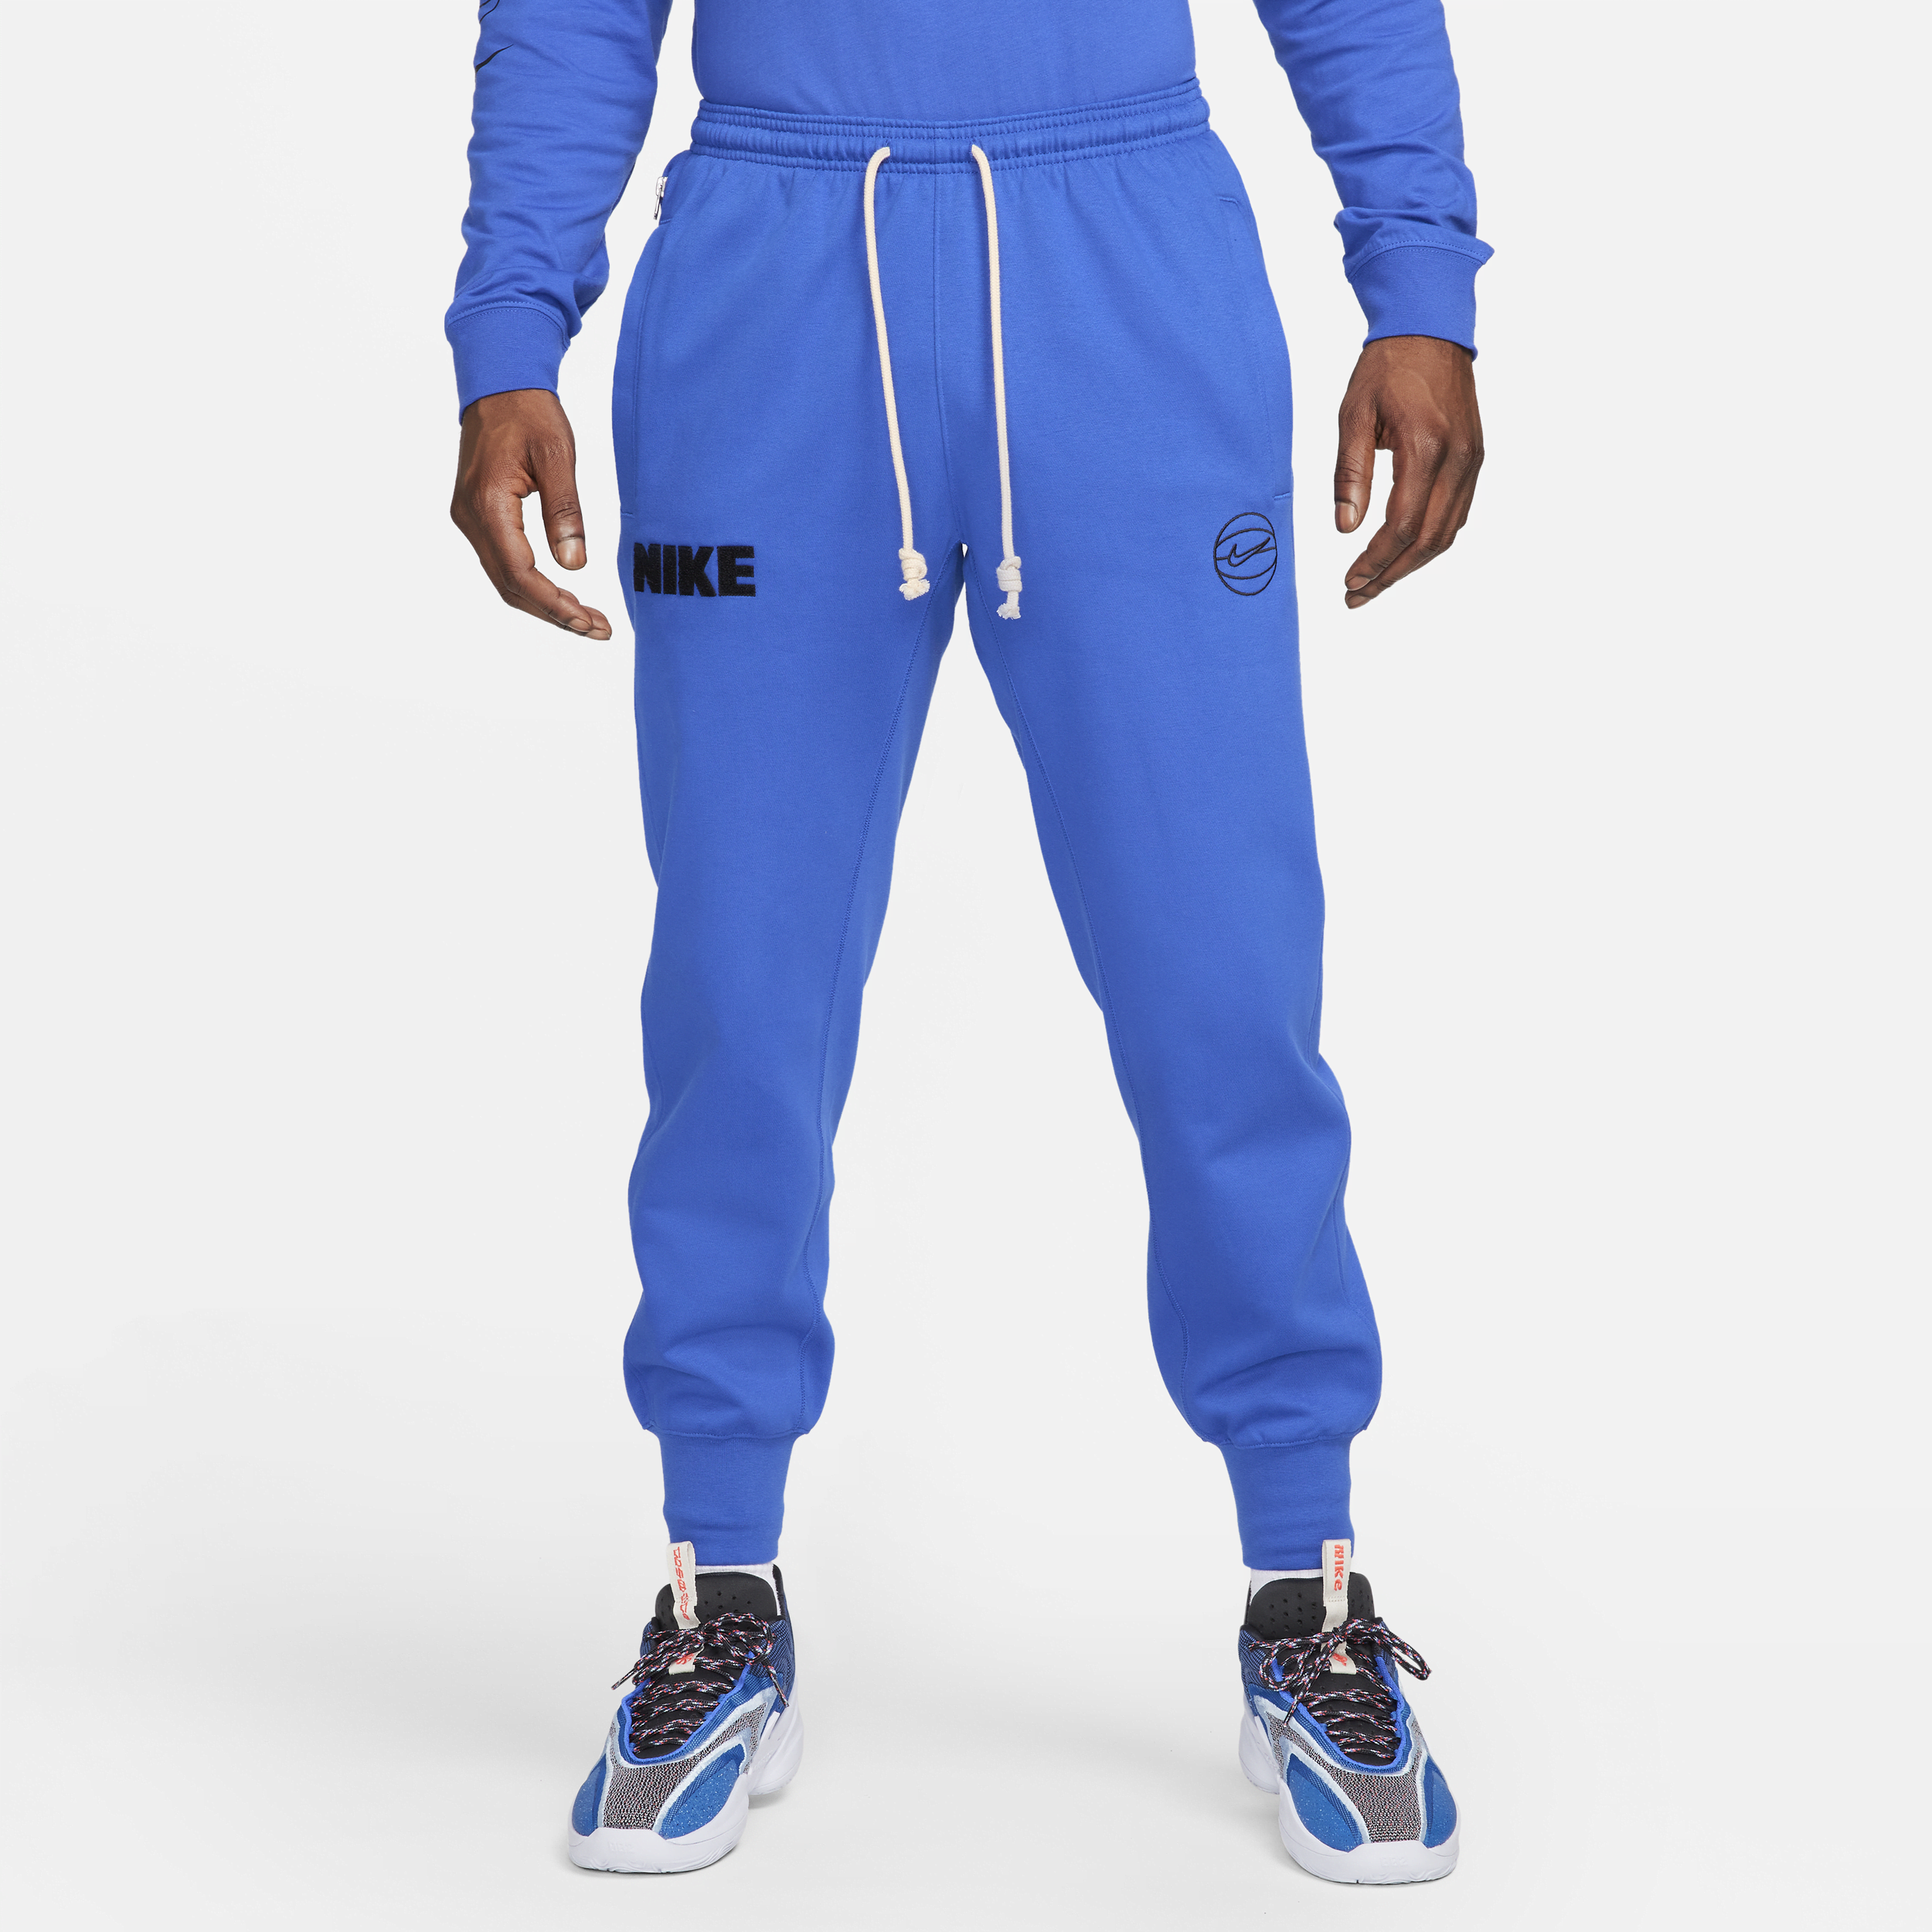 Nike Dri-FIT Standard Issue basketbalbroek met boorden voor heren - Blauw